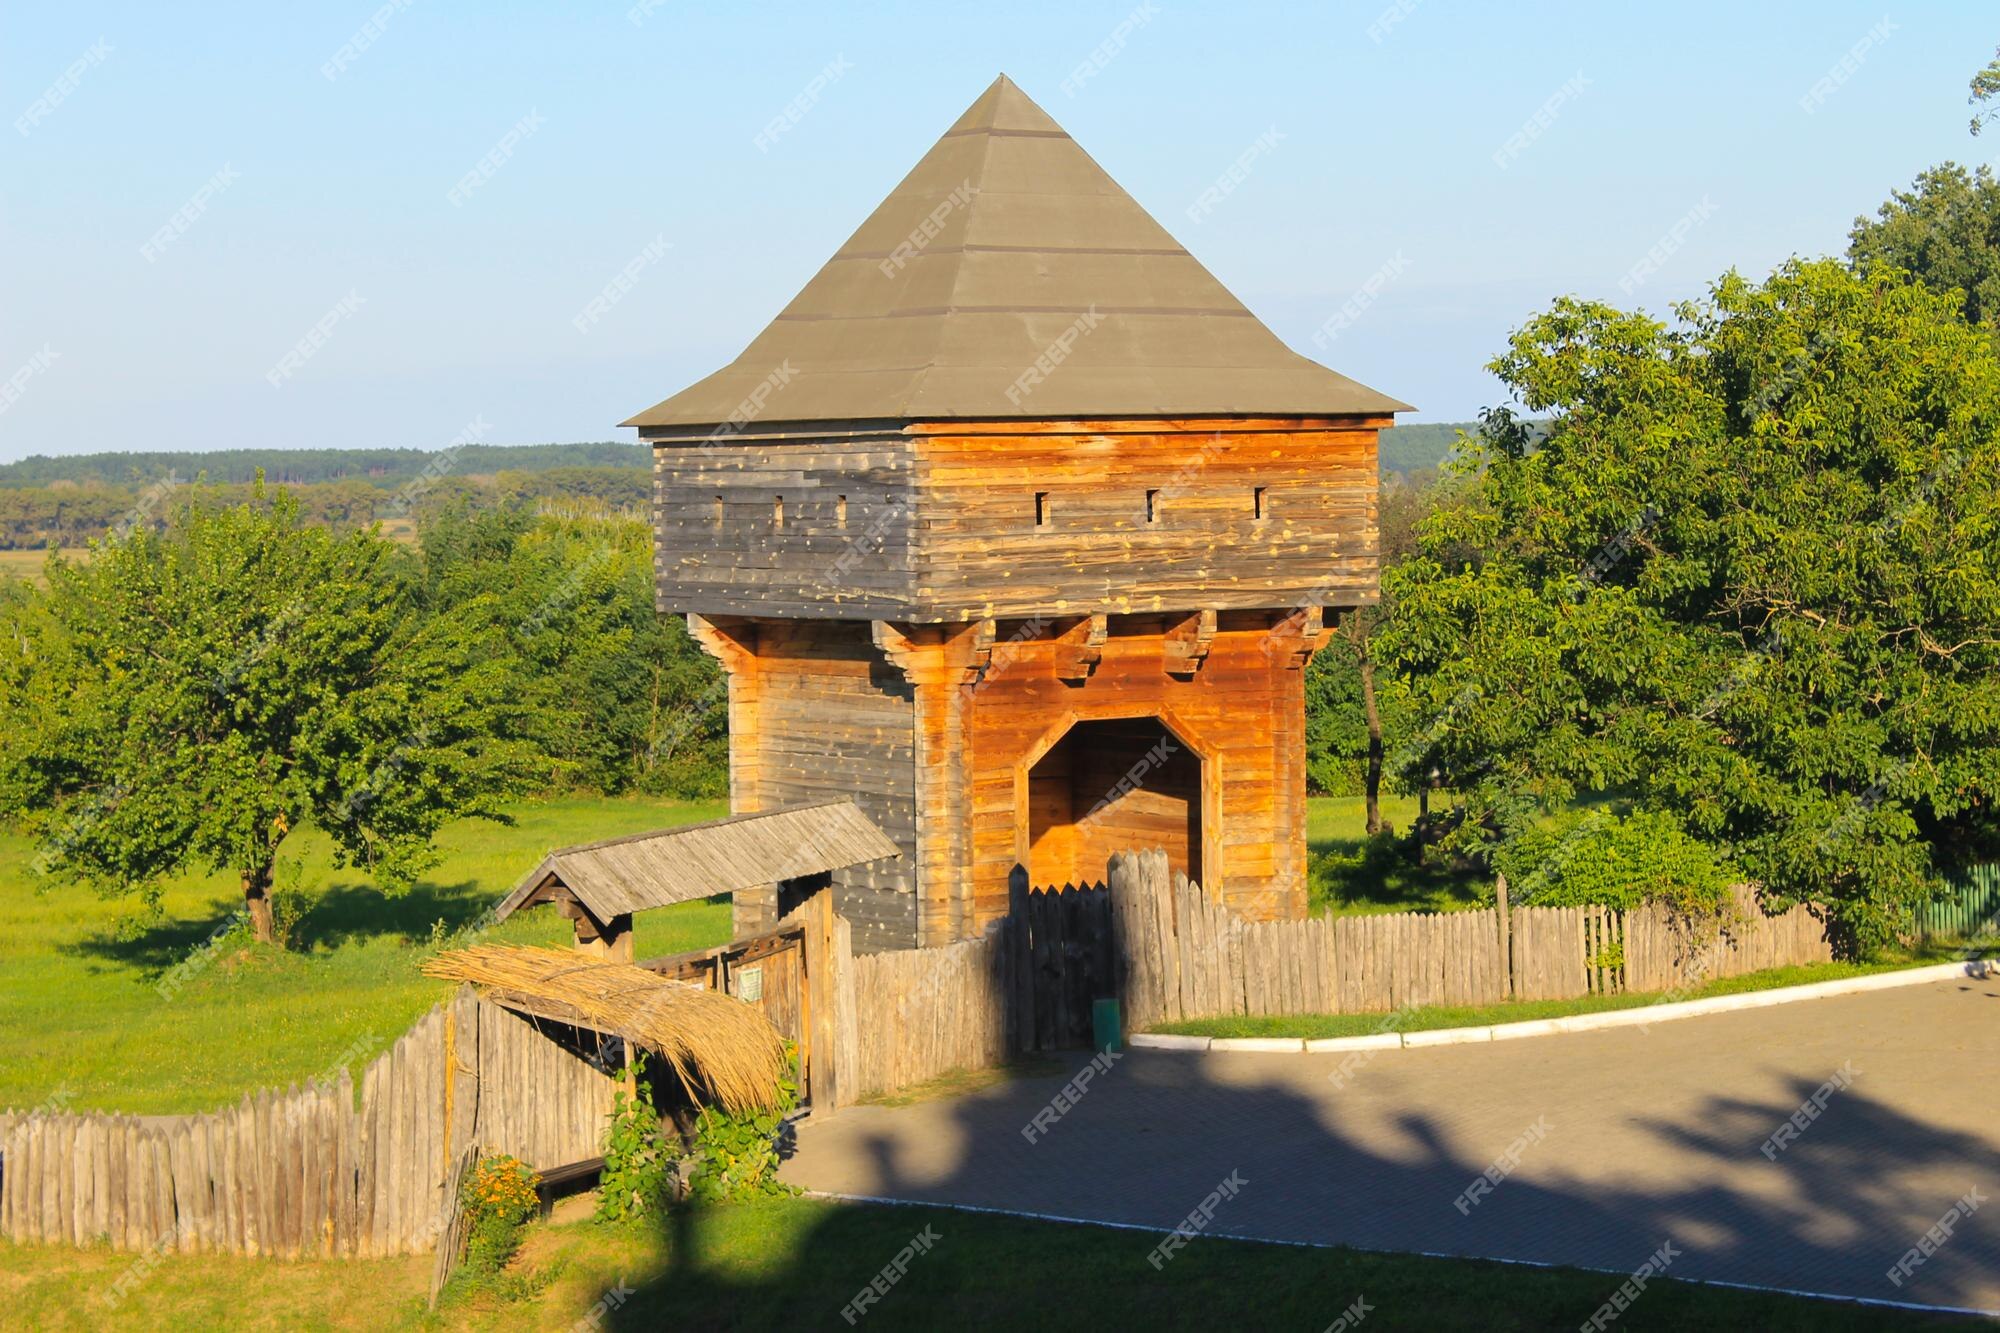 Premium Photo | Old wooden watchtower in subotiv village, ukraine